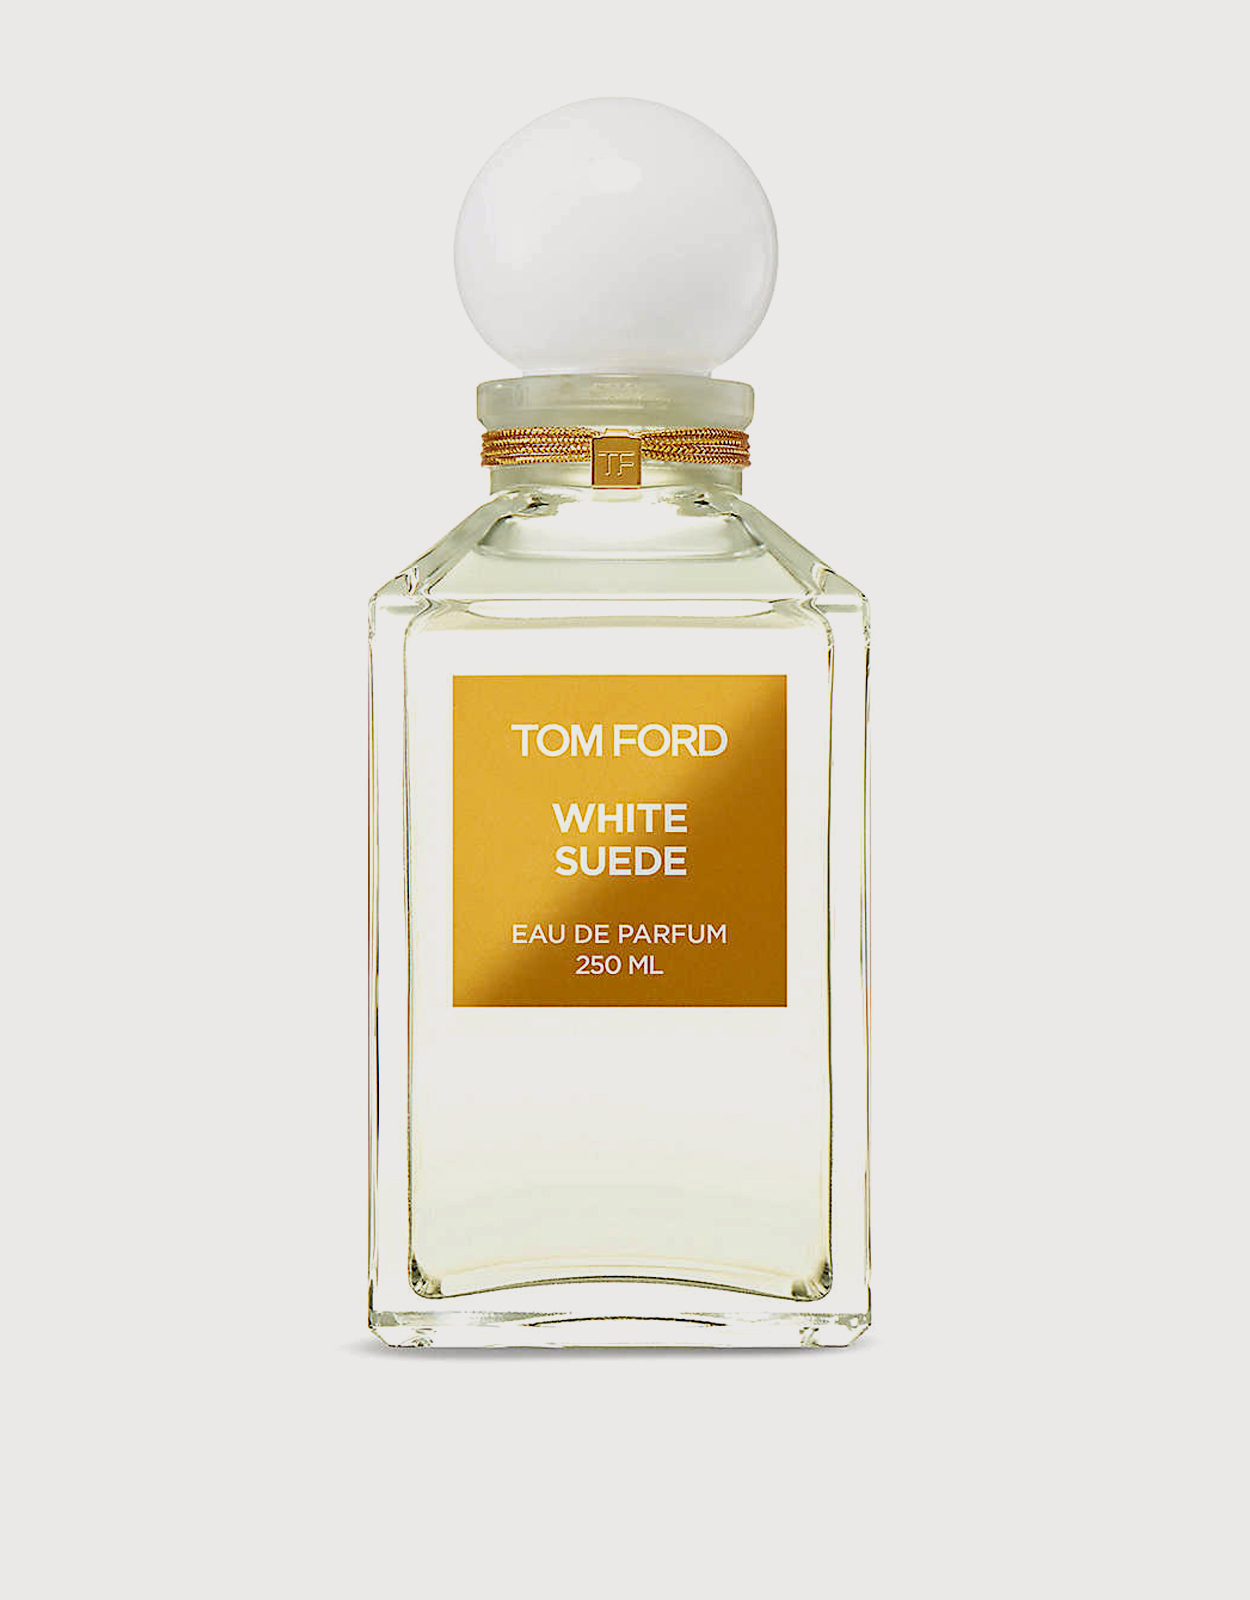 Tom Ford White Suede Eau de Parfum 250ml